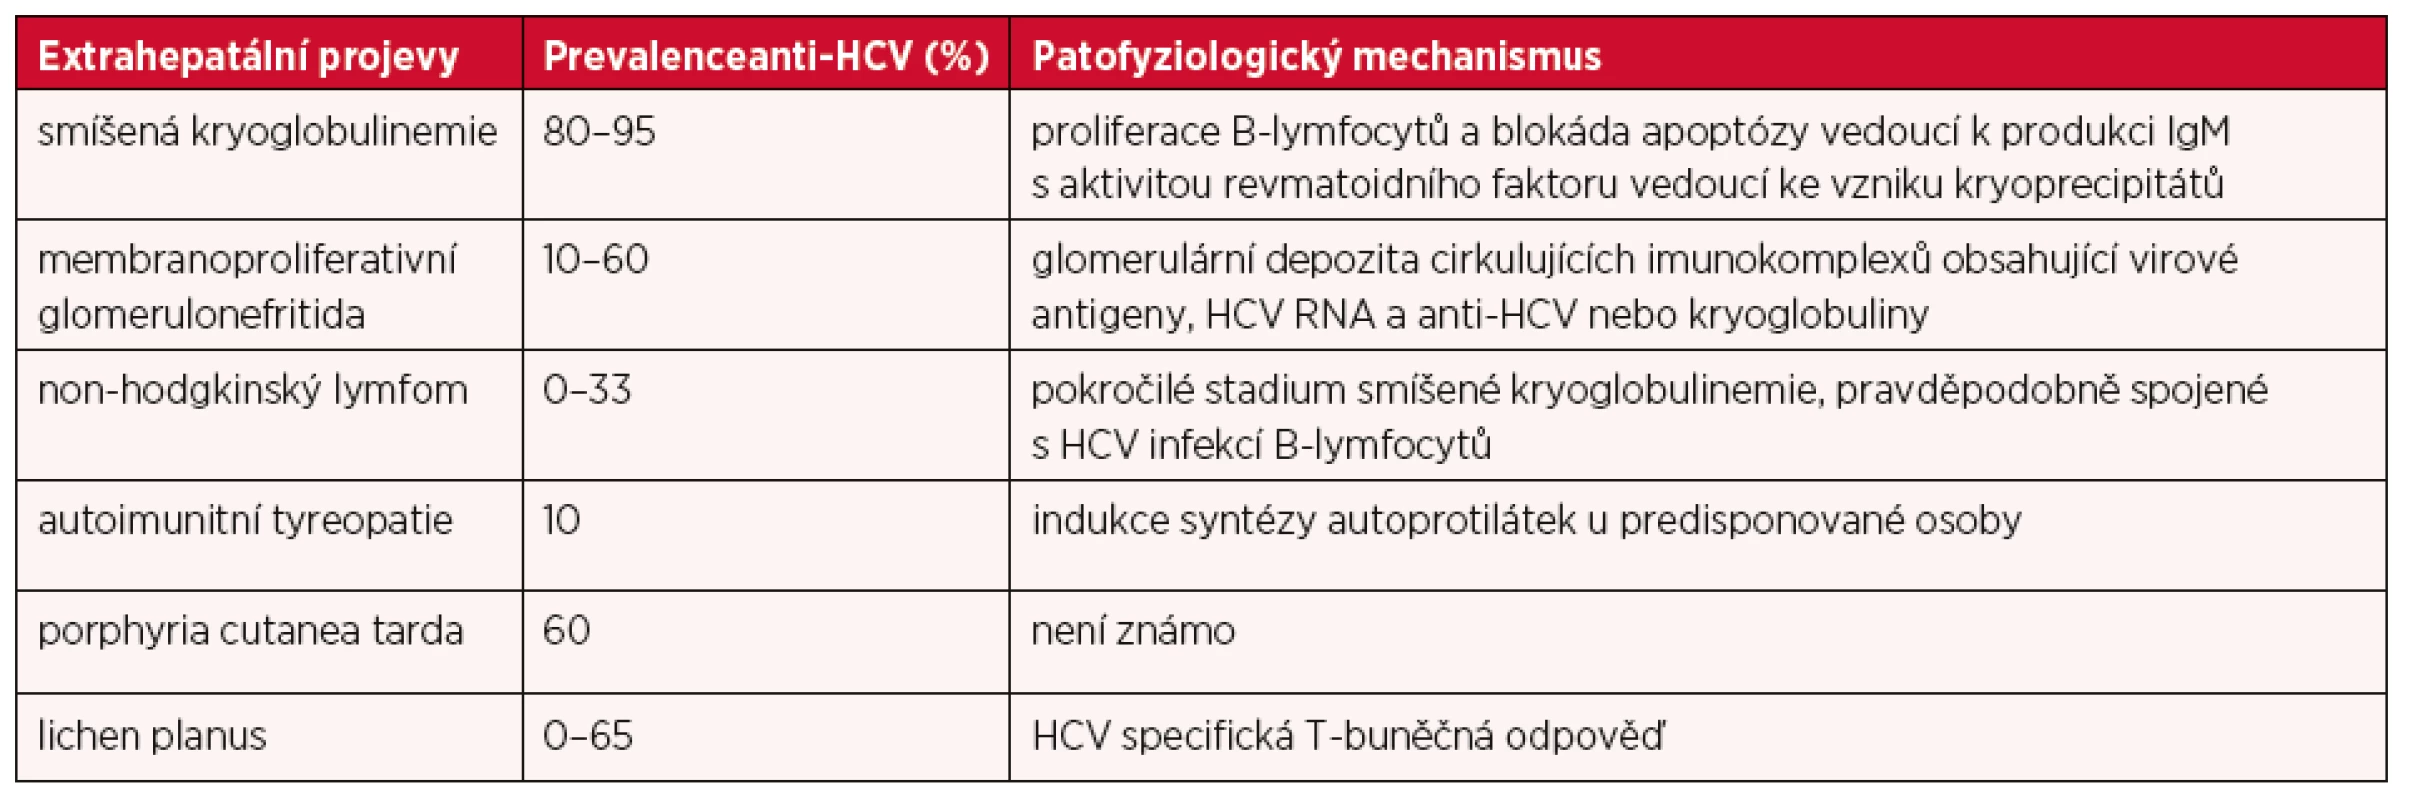 Extrahepatální projevy HCV infekce, jejich asociace s HCV a nejdůležitější patofyziologické mechanismy jejich rozvoje – upraveno dle (7)